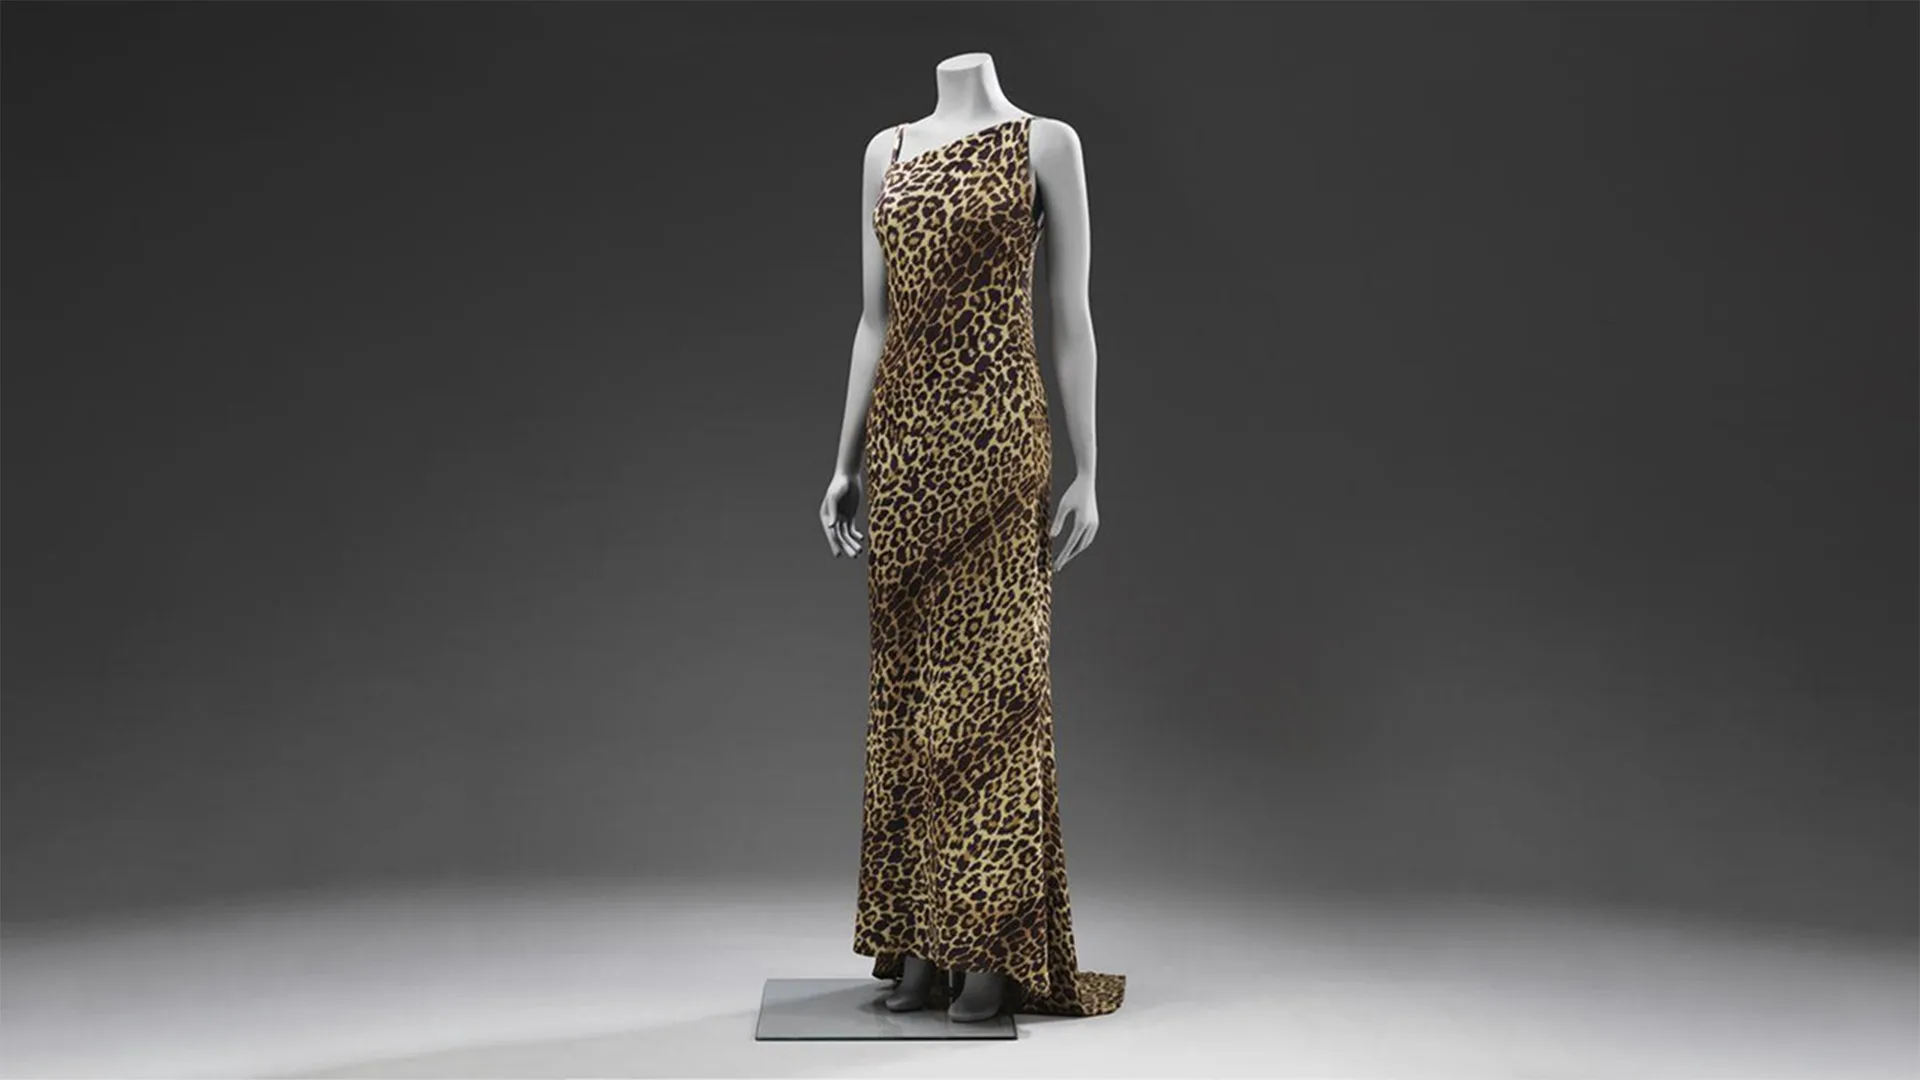 A leopard print dress